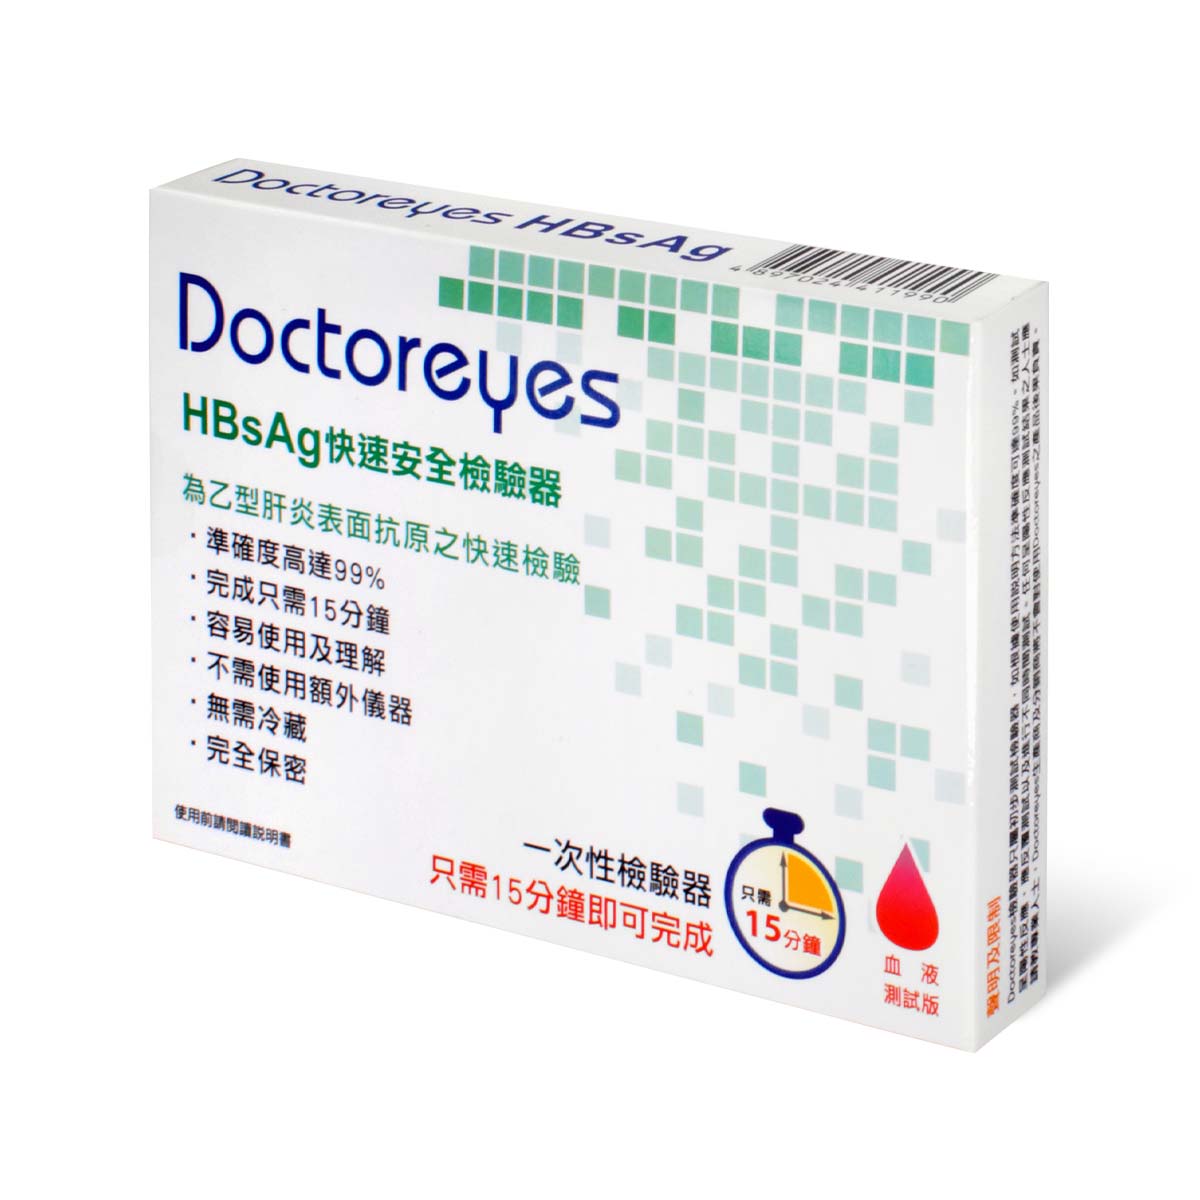 ドクターアイズ B 型肝炎 ラピッドテストキット-p_1